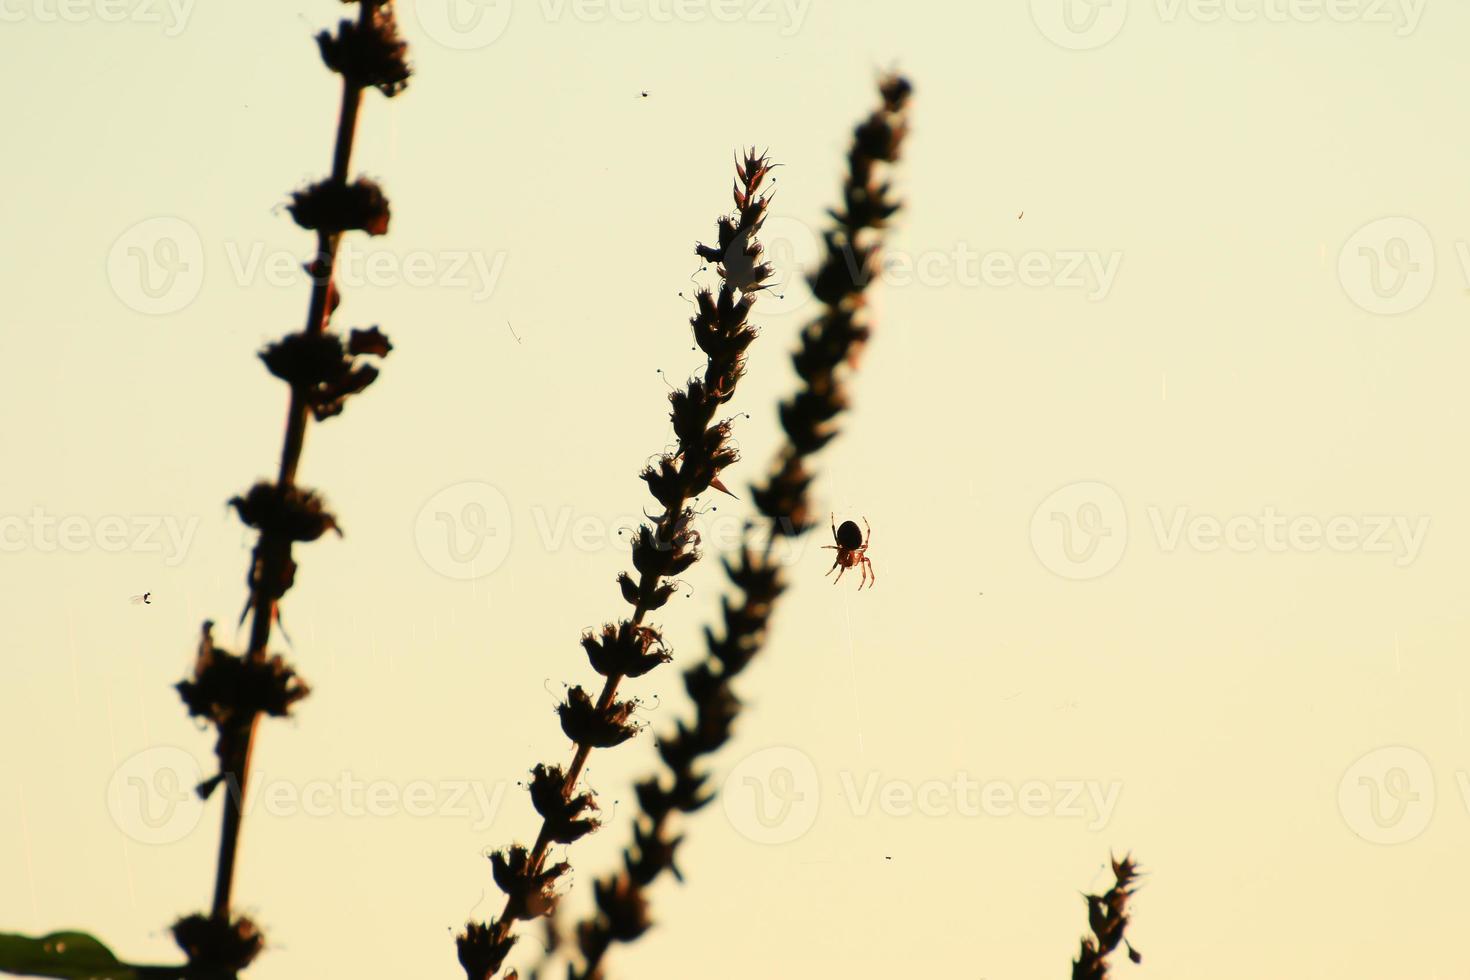 silueta de araña en la hierba al atardecer foto